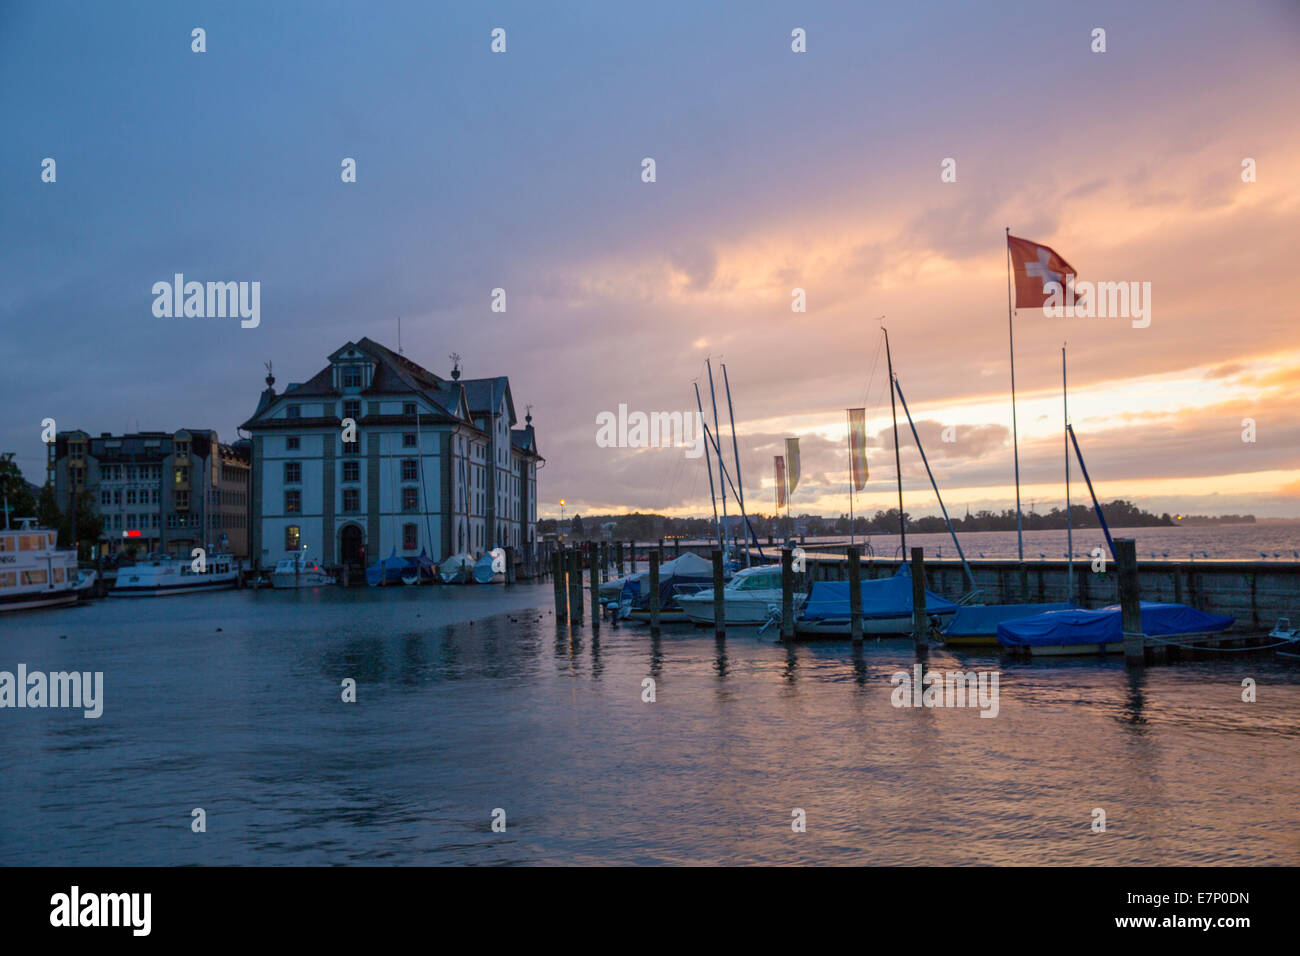 El lago de Constanza, Rorschach, puerto, puerto, luz del atardecer, SG, cantón St., clima, Suiza, Europa Foto de stock